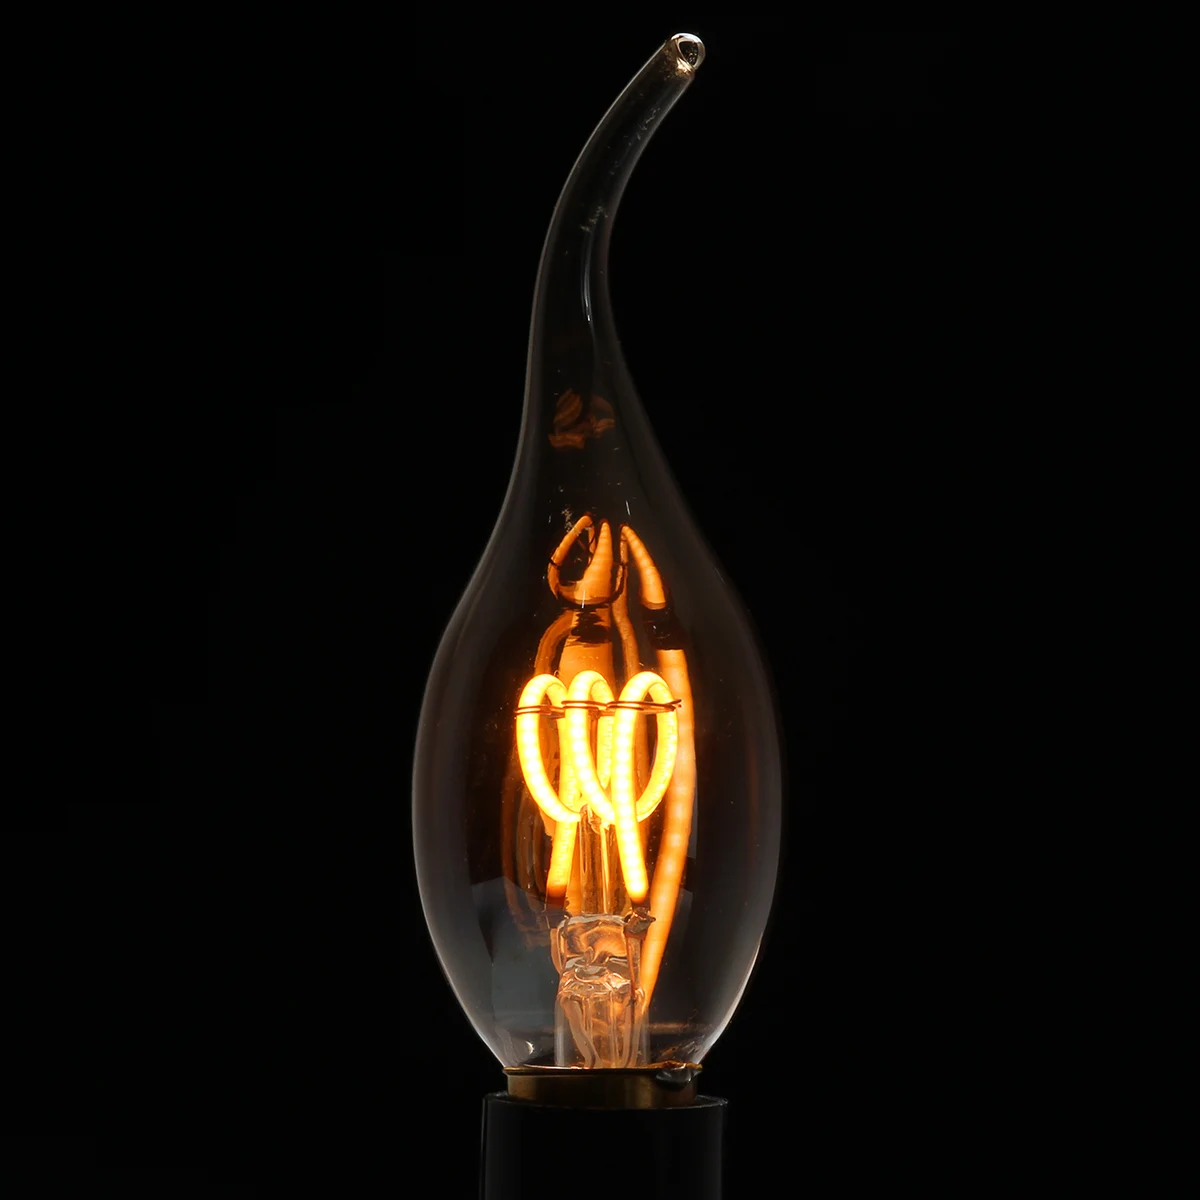 4 шт. цвета: золотистый оттенок E14 Эдисон светодиодный ламп накаливания C35 Винтаж спираль лампа теплый белый 2200 K мягкая гибкая нить Cob